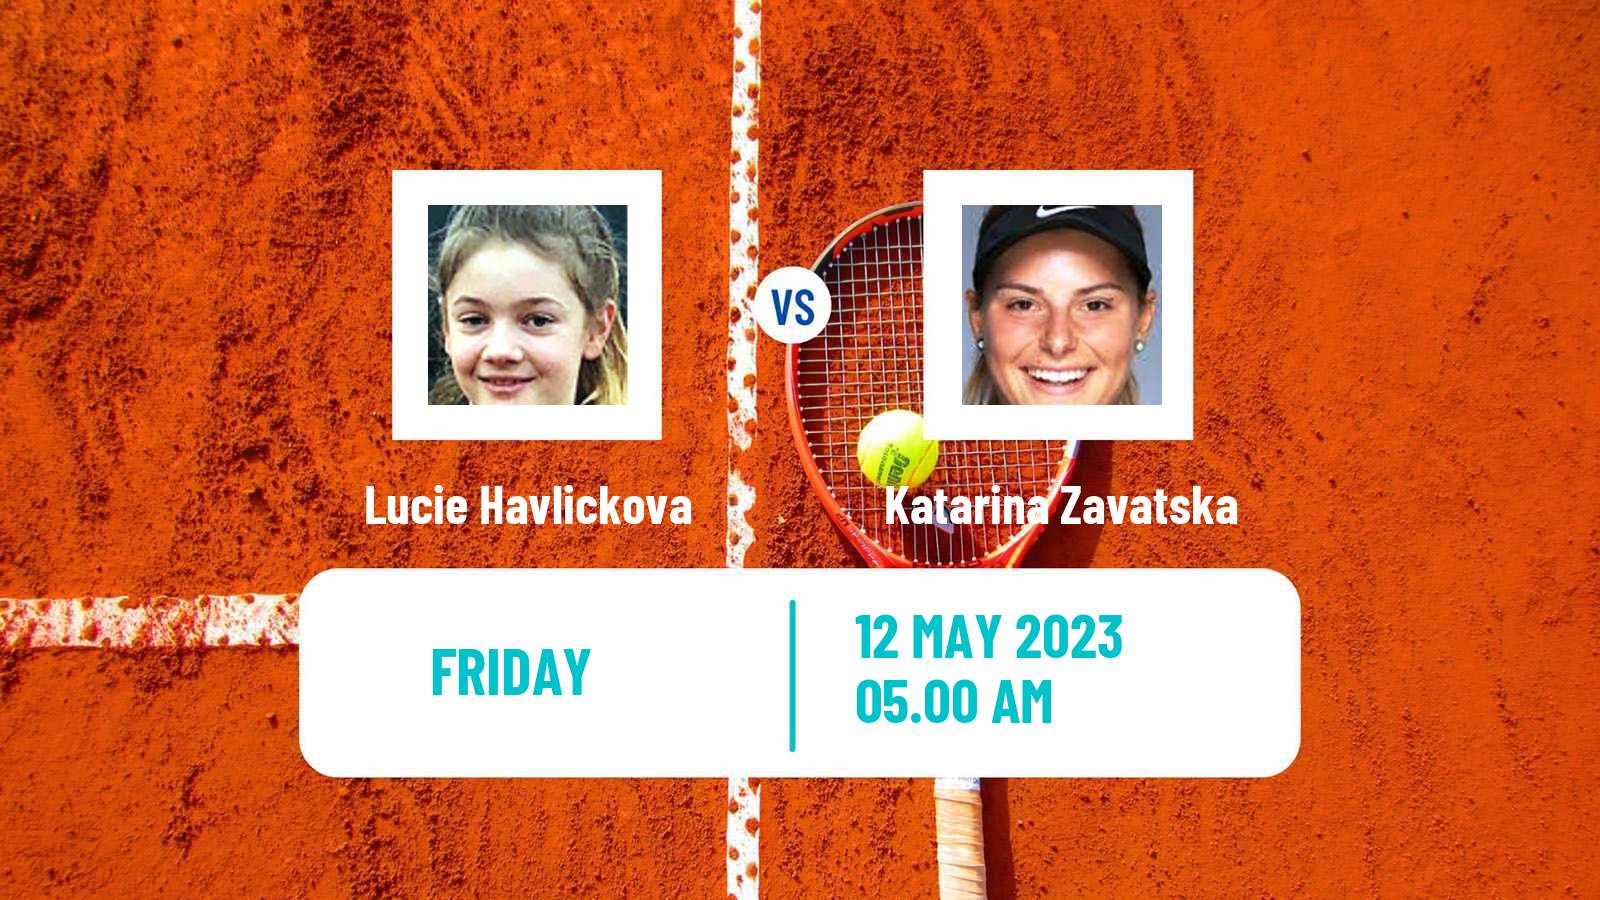 Tennis ITF Tournaments Lucie Havlickova - Katarina Zavatska